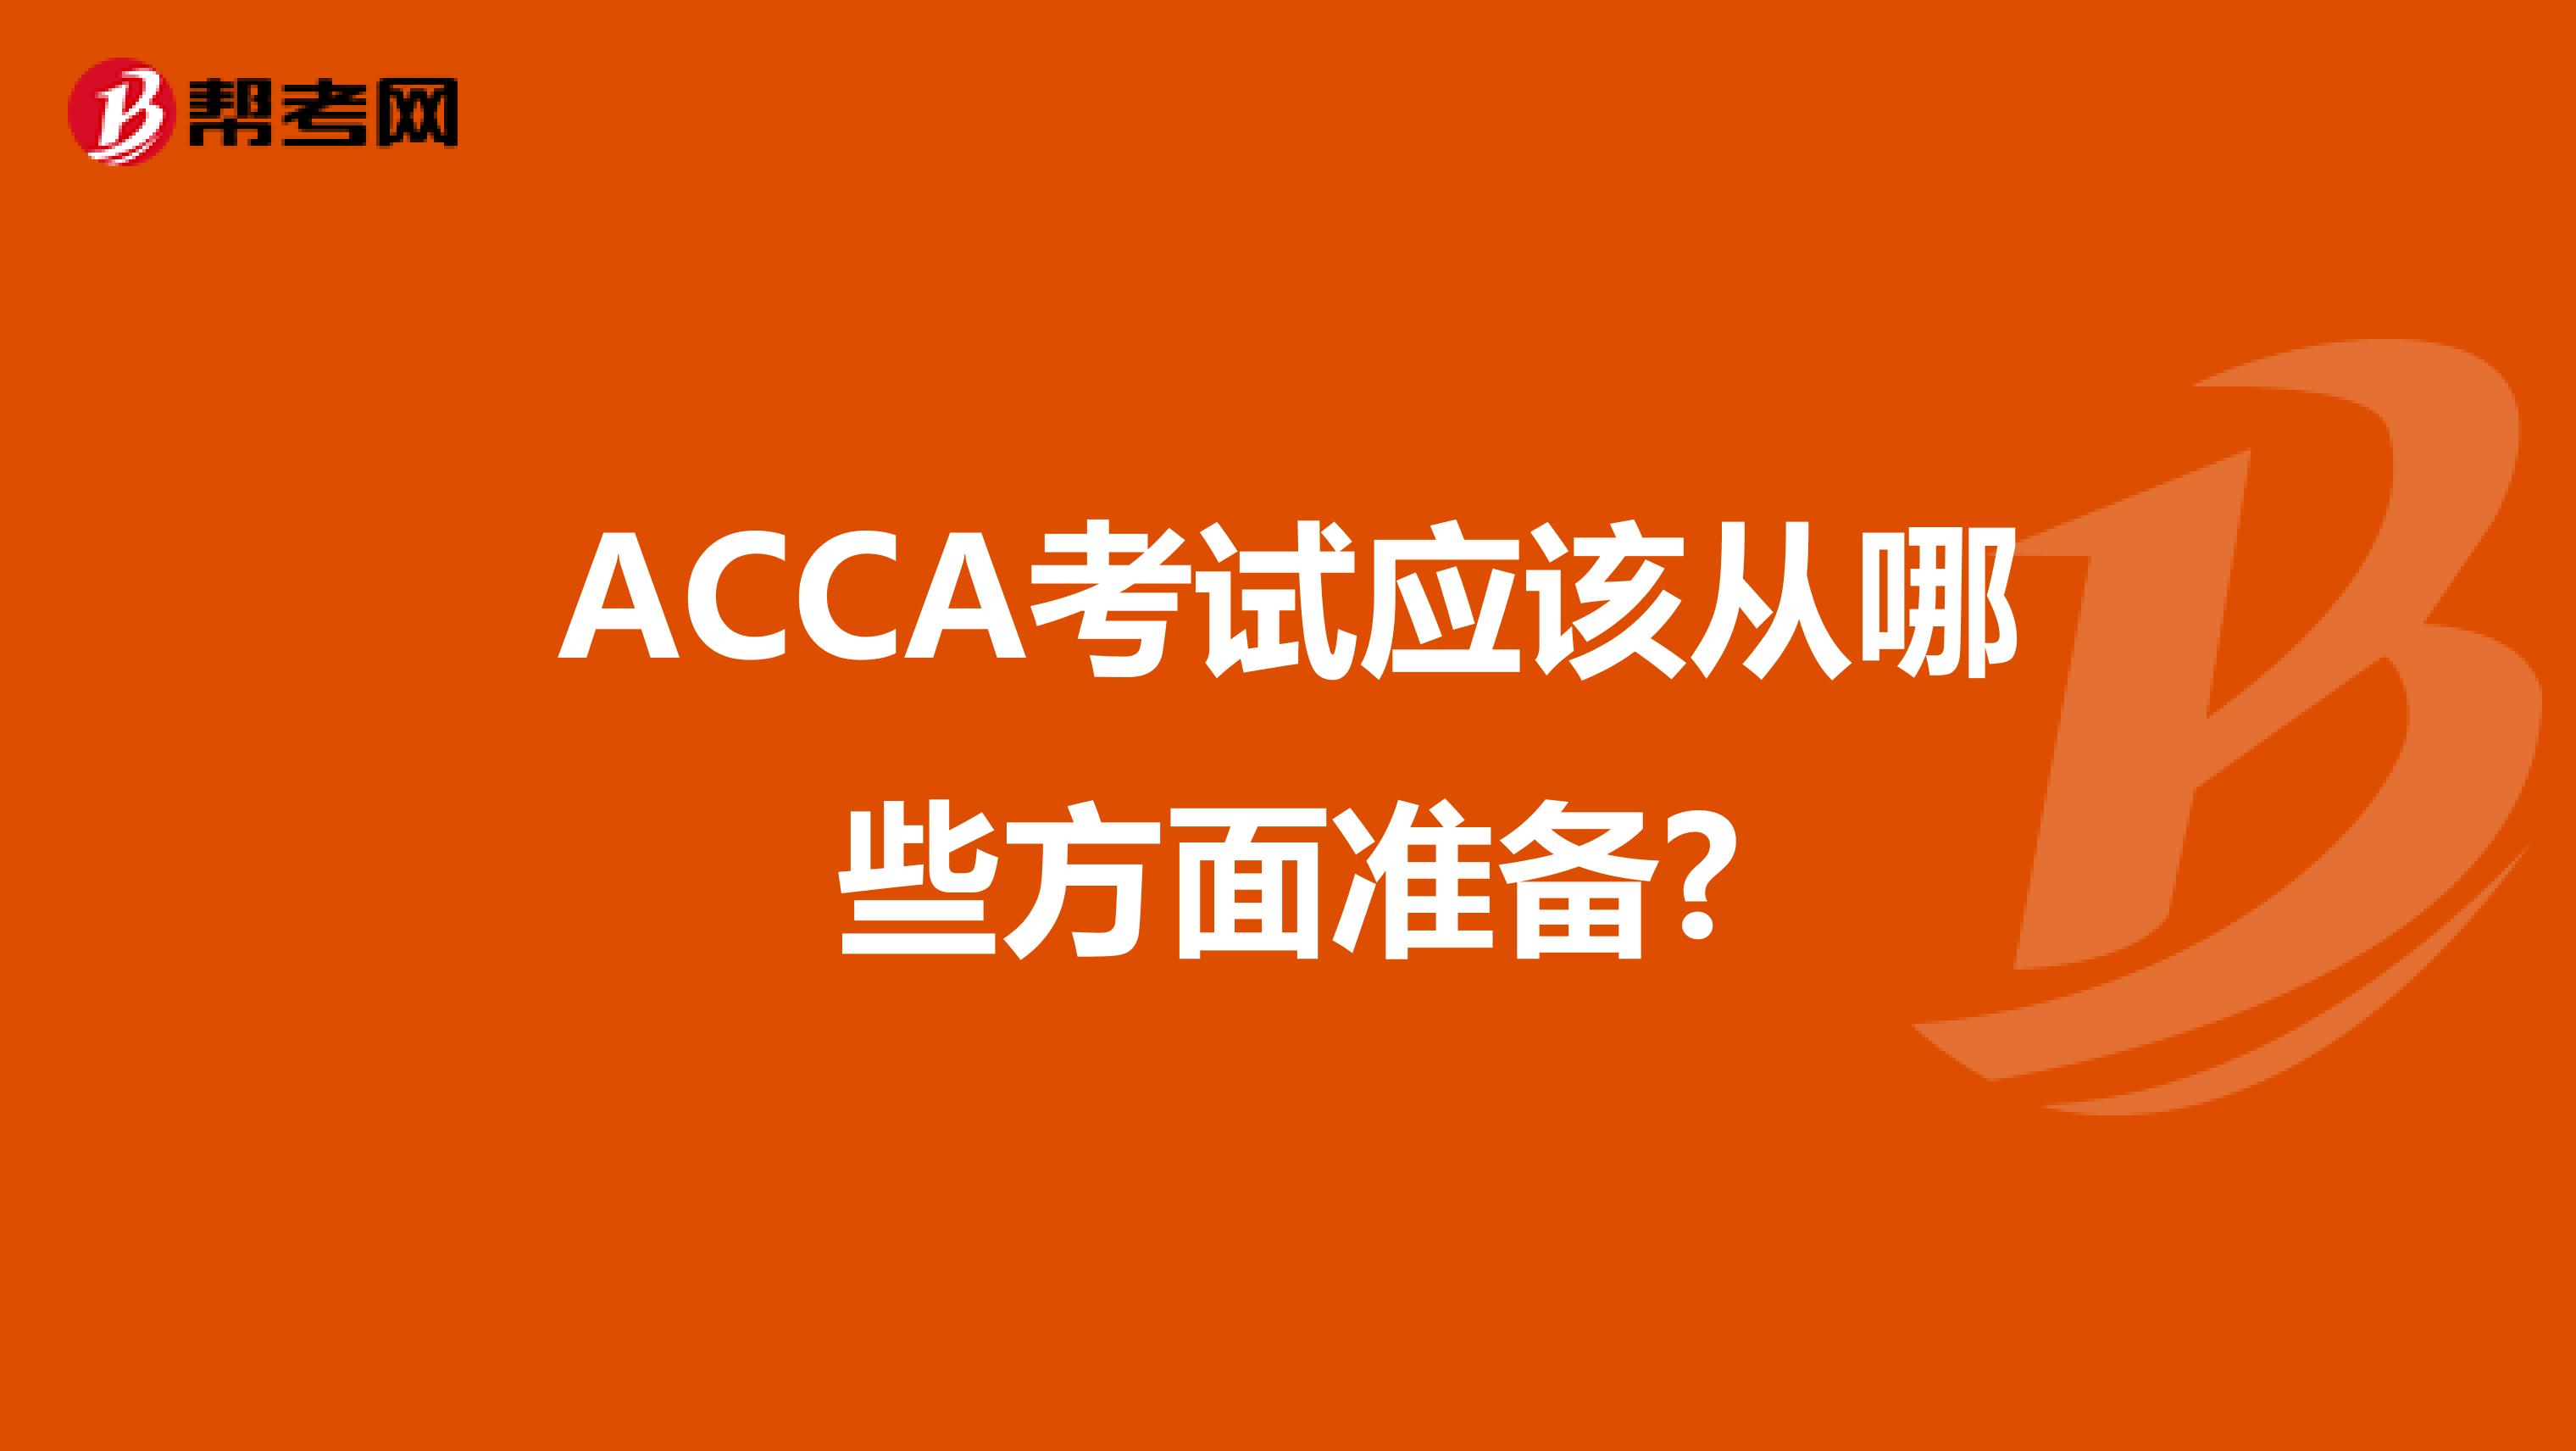 ACCA考试应该从哪些方面准备?